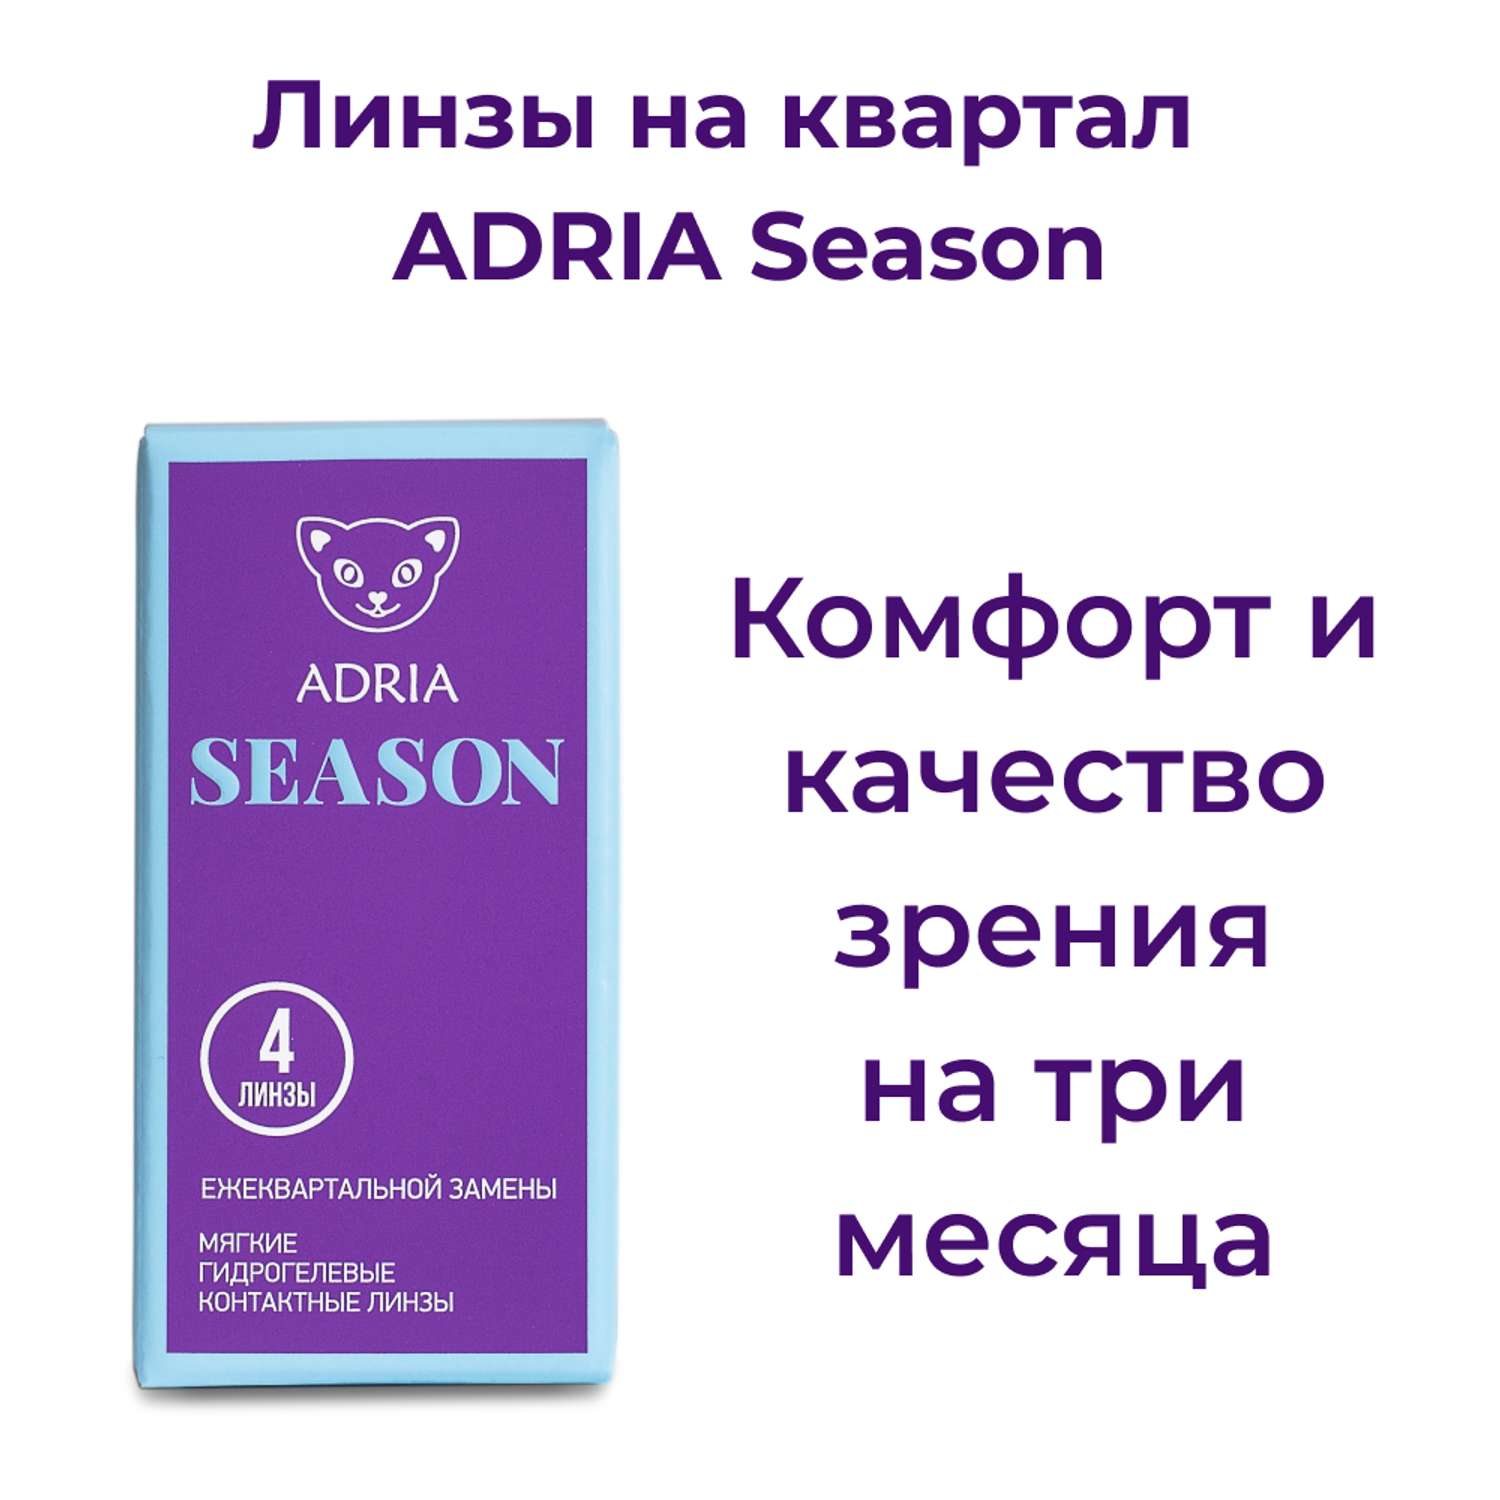 Контактные линзы ADRIA Season 4 линзы R 8.6 -2.75 - фото 2